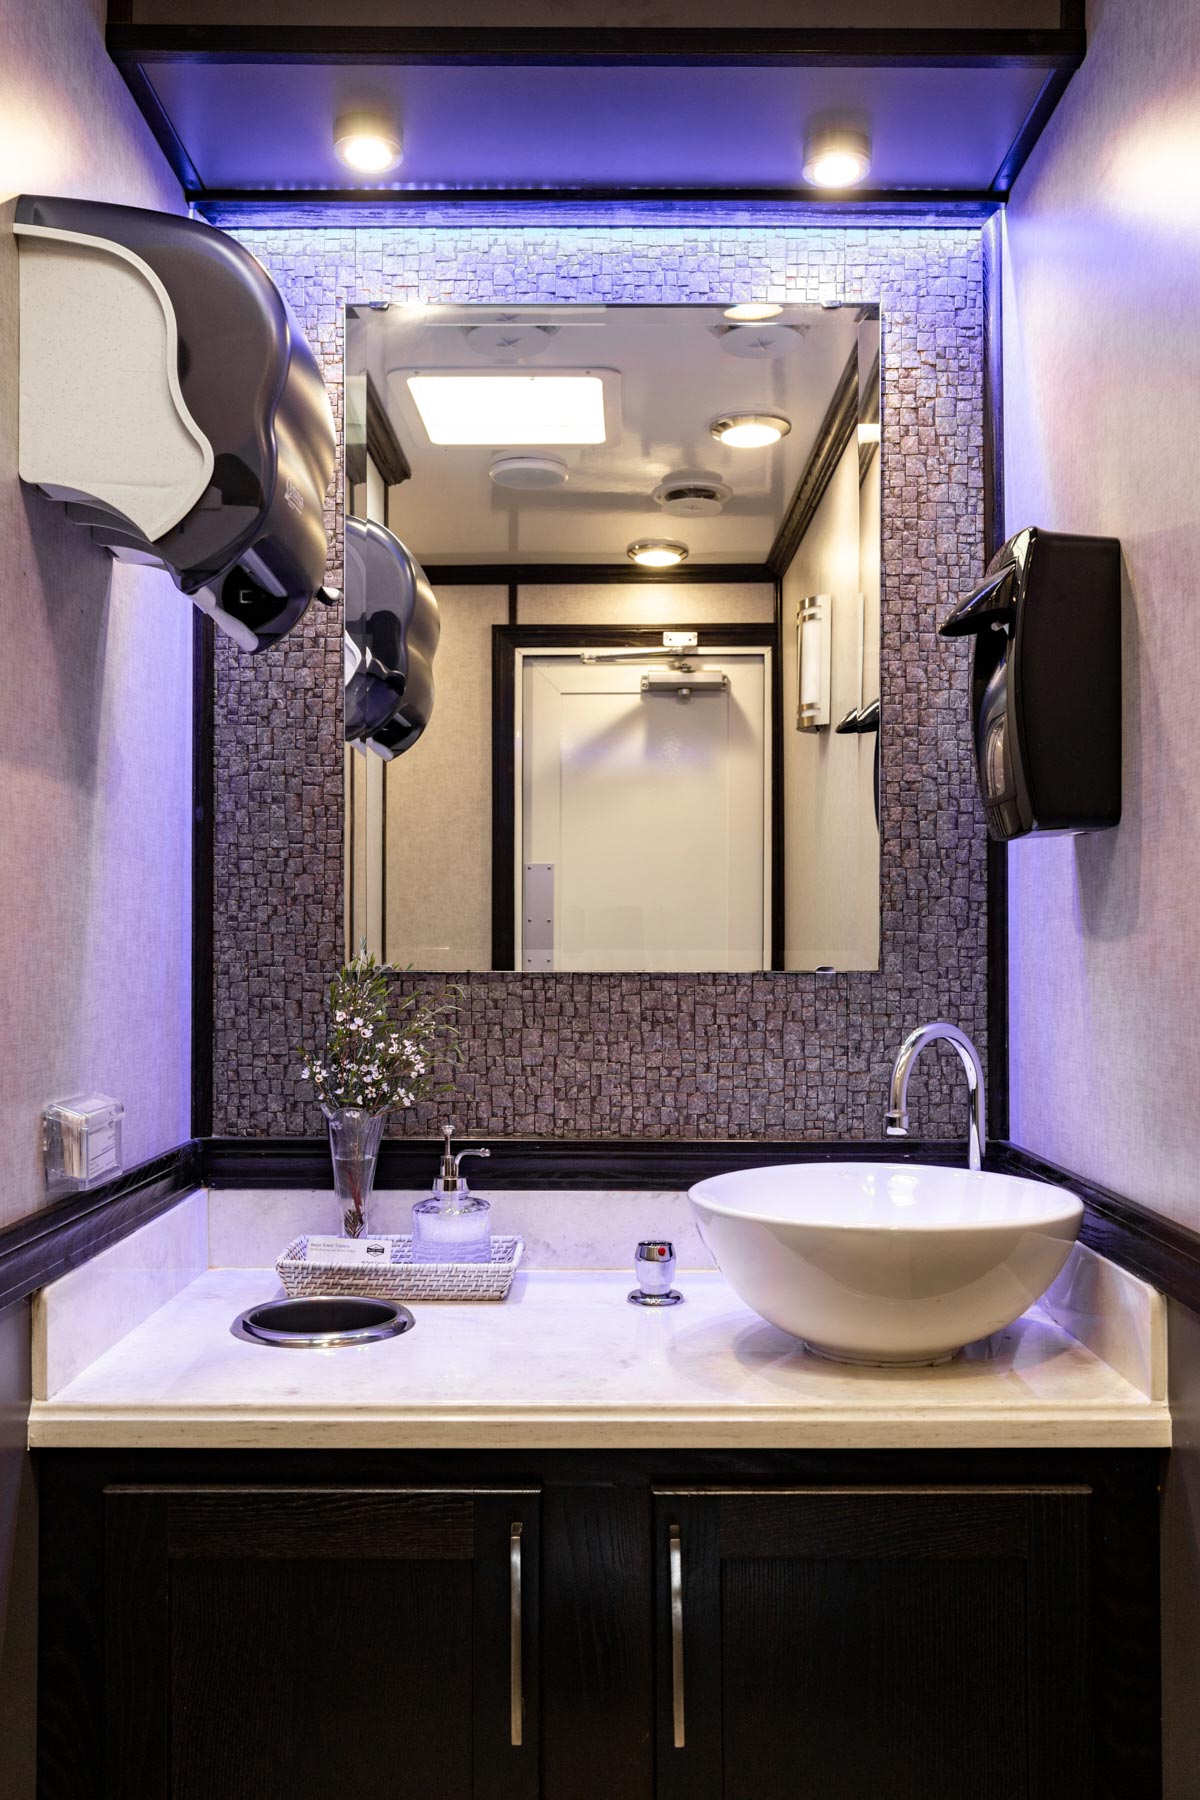 2-Station Luxury Restroom Trailer Rental – Interior View 1